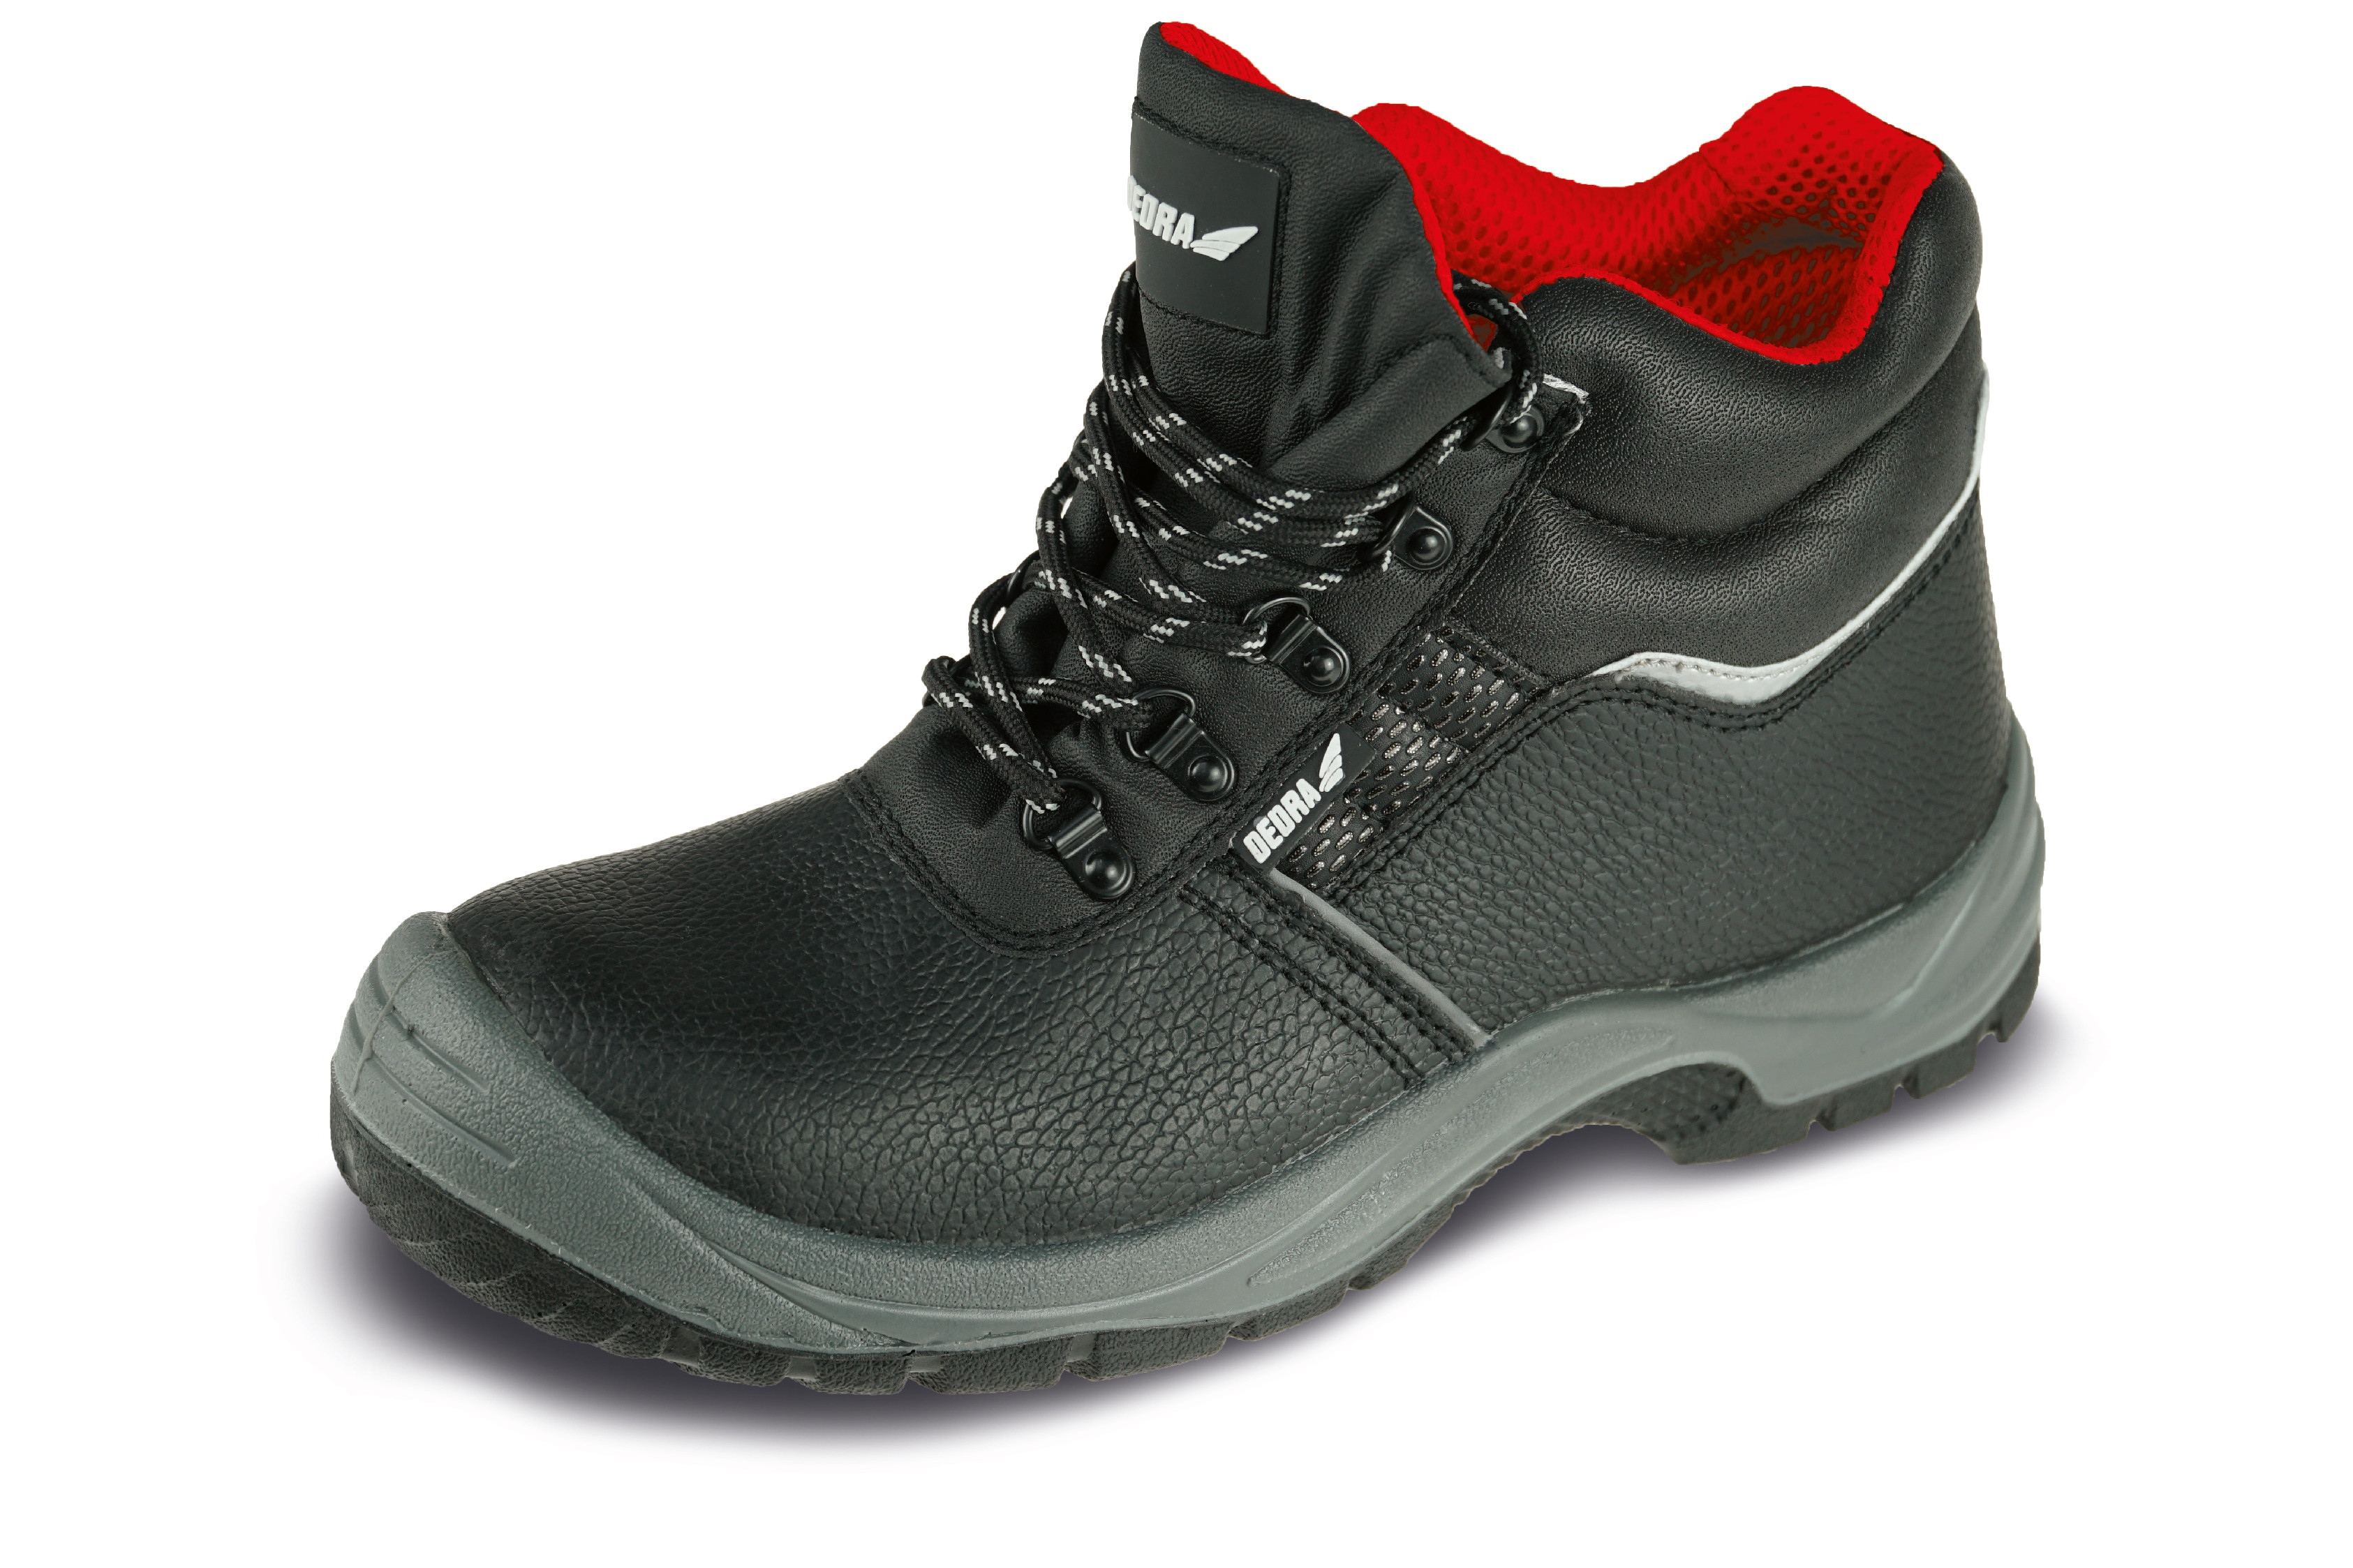 Bezpečnostní boty T1AW, kožené, velikost: 47, kat. S3 SRC DEDRA BH9T1AW-47 + Dárek, servis bez starostí v hodnotě 300Kč